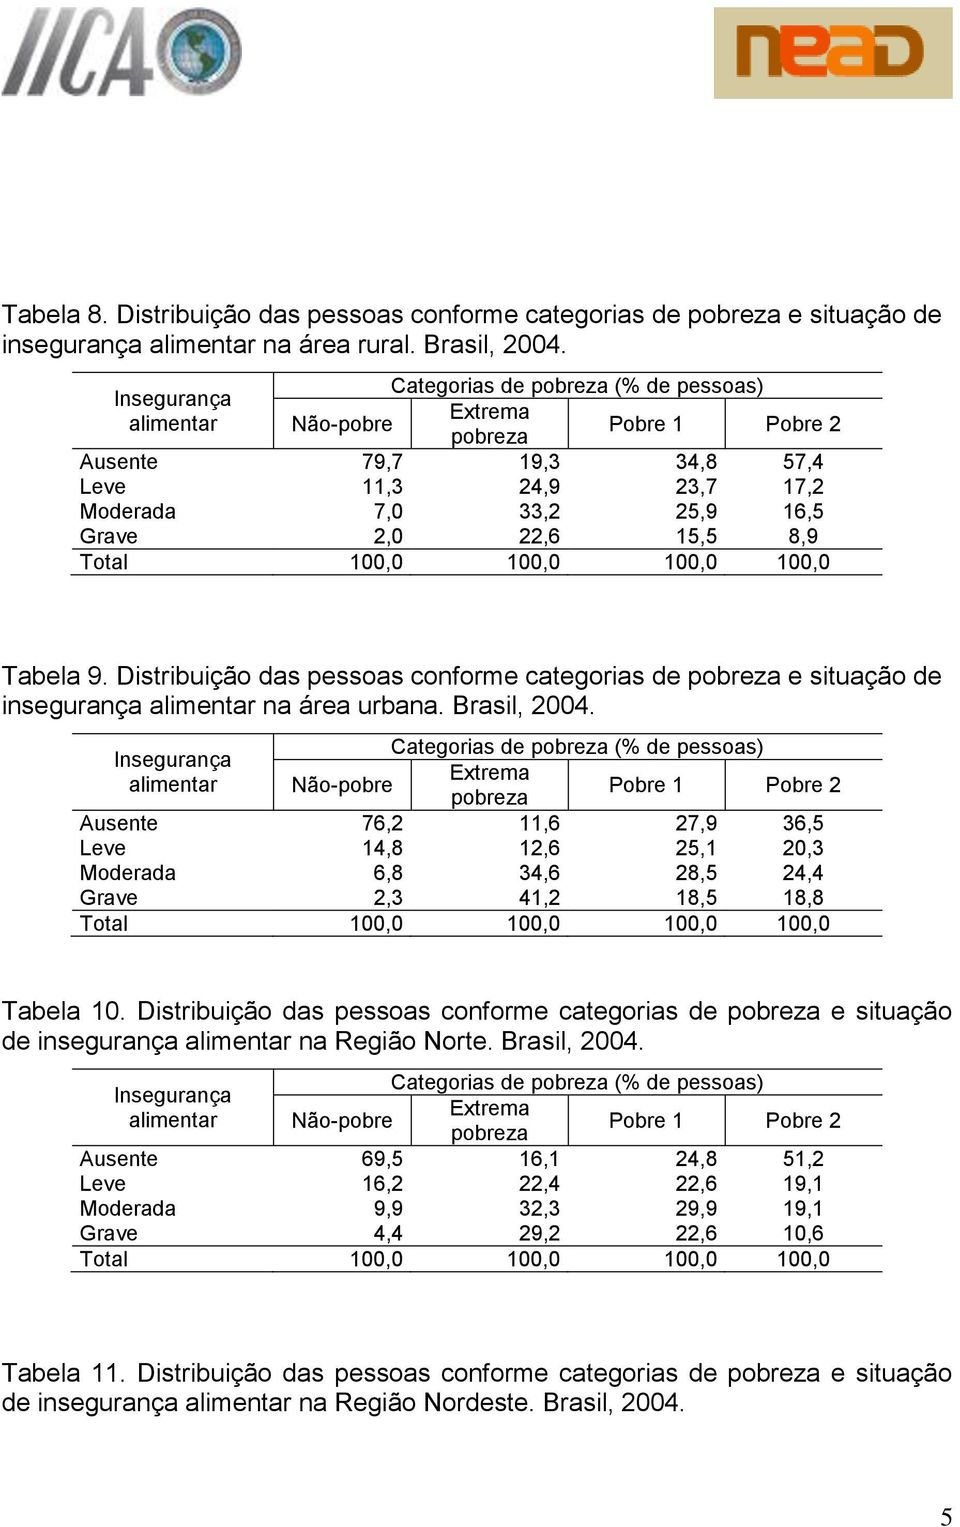 Distribuição das pessoas conforme categorias de e situação de insegurança alimentar na área urbana. Brasil, 2004.